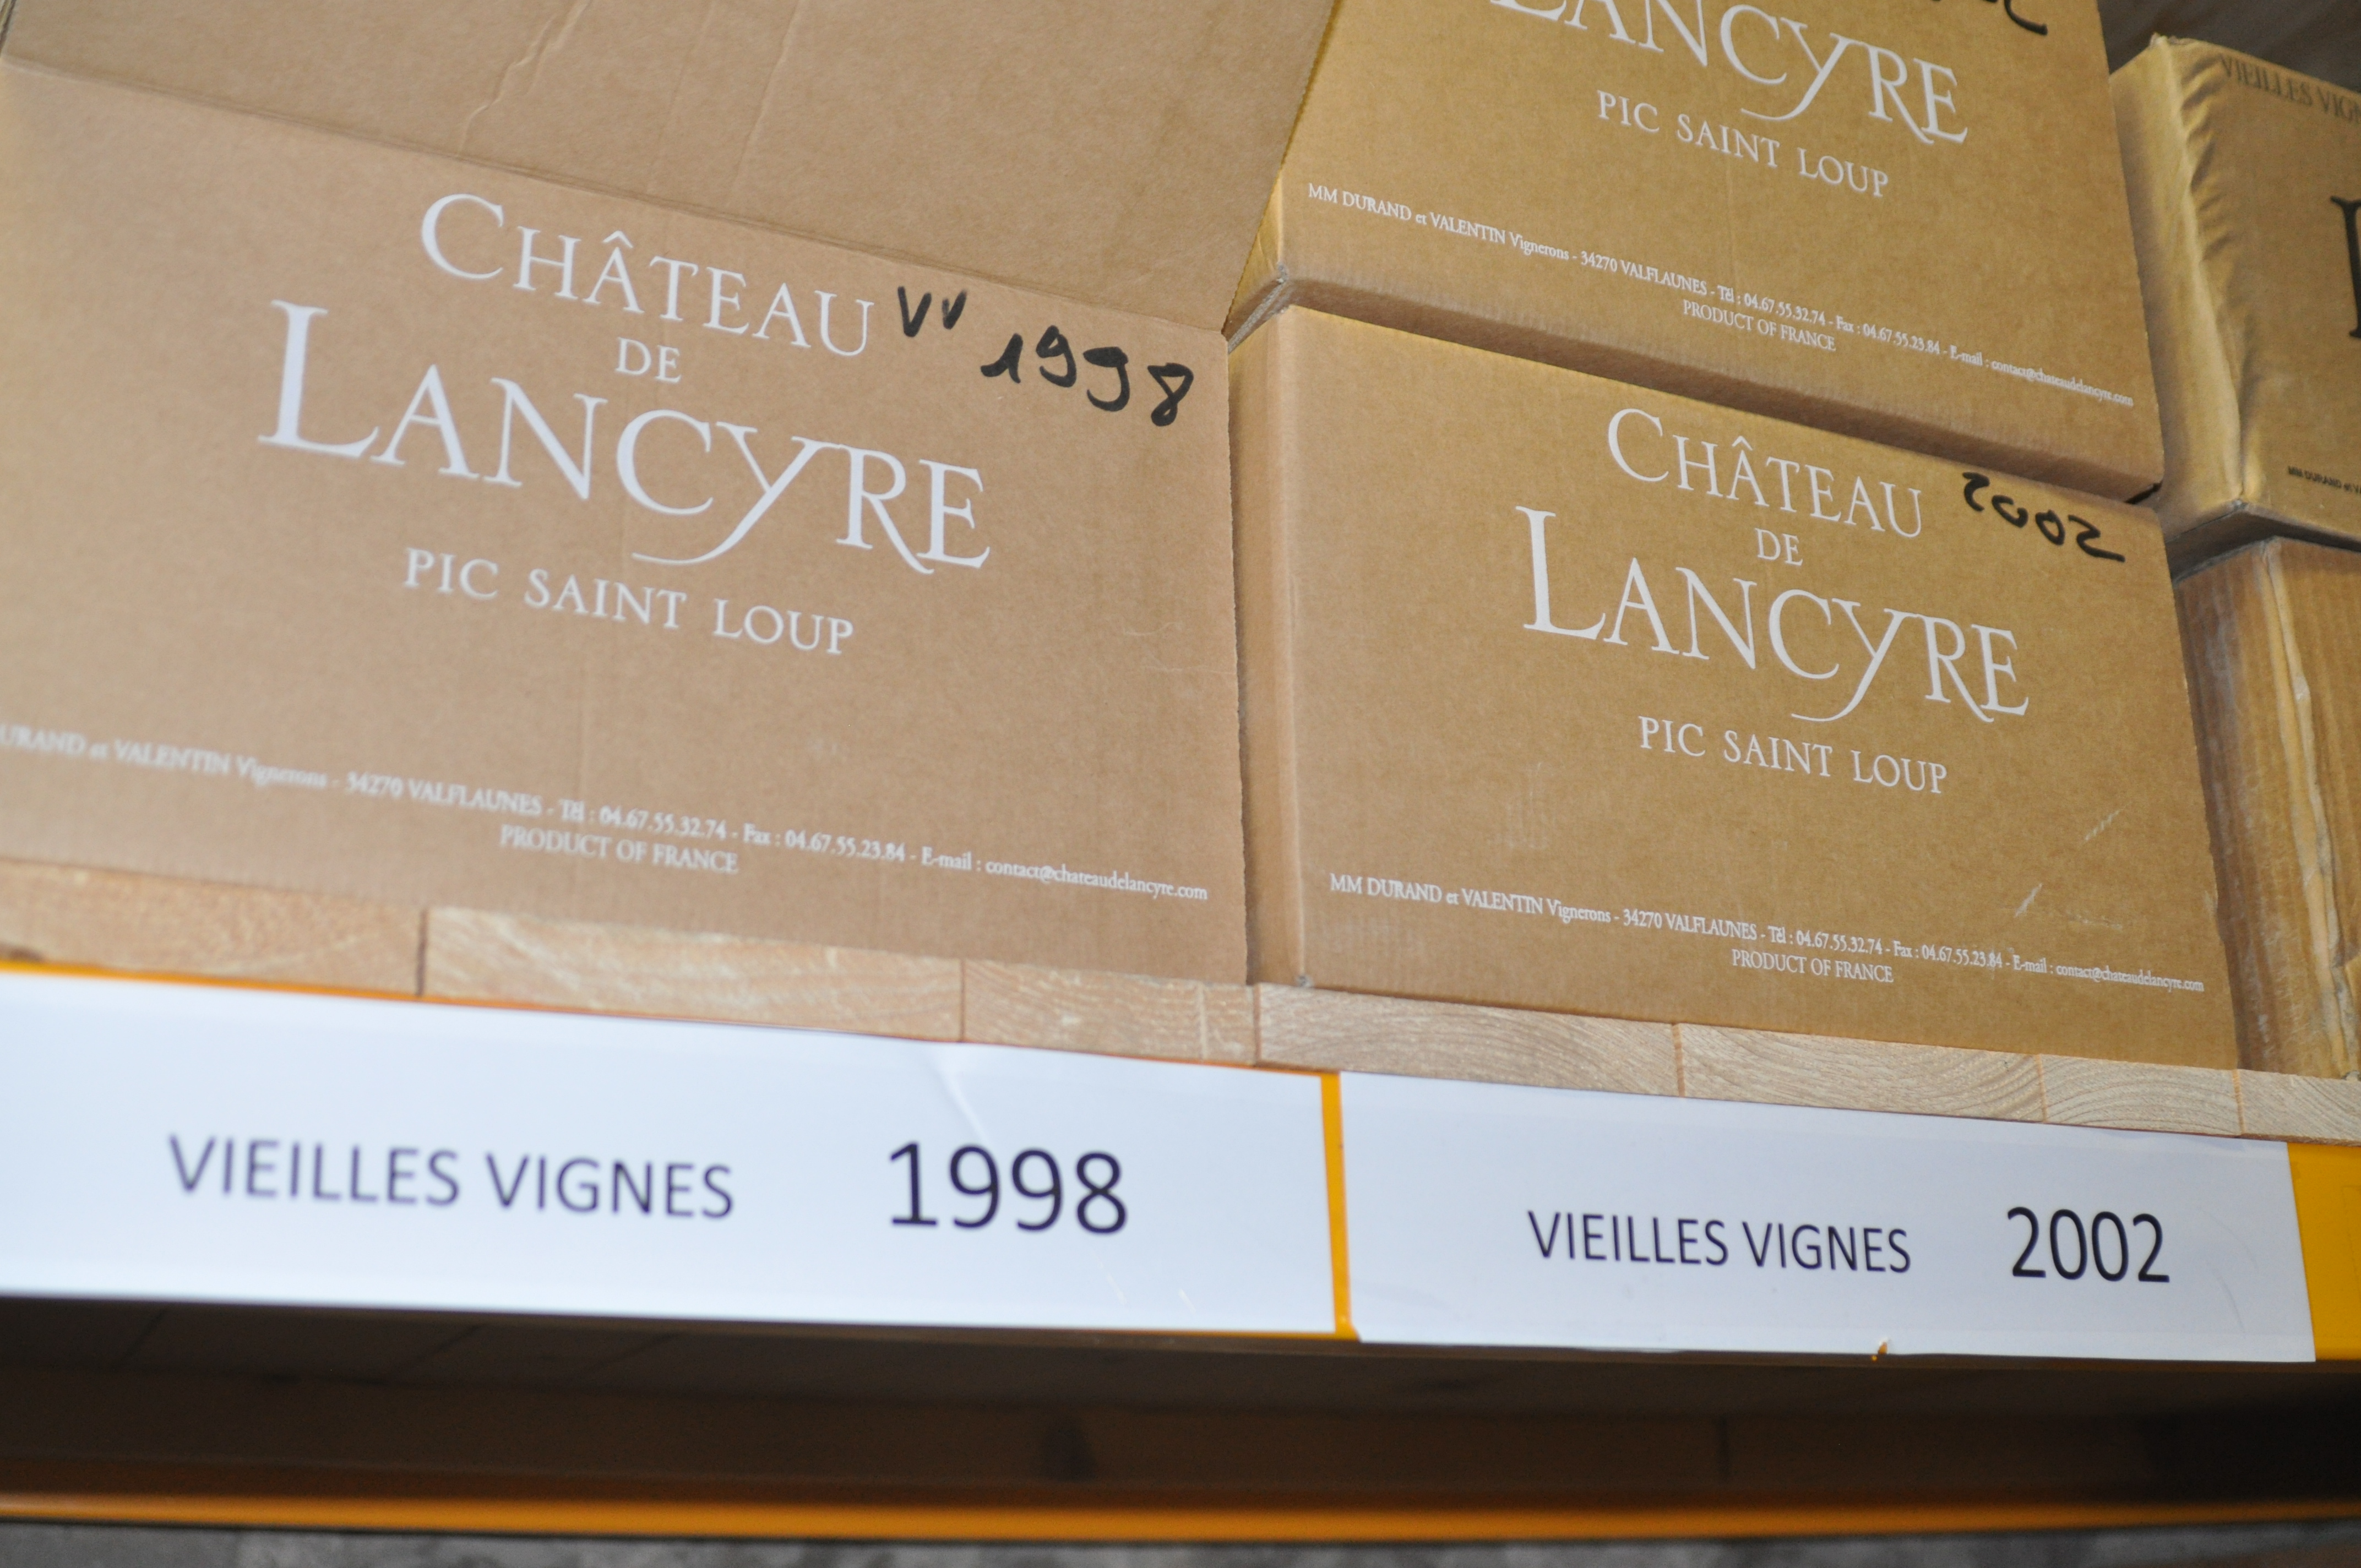 Au cœur de la vinothèque du Château de Lancyre, plus de 5000 bouteilles prennent la poussière… - Crédit photo : Yoann Palej